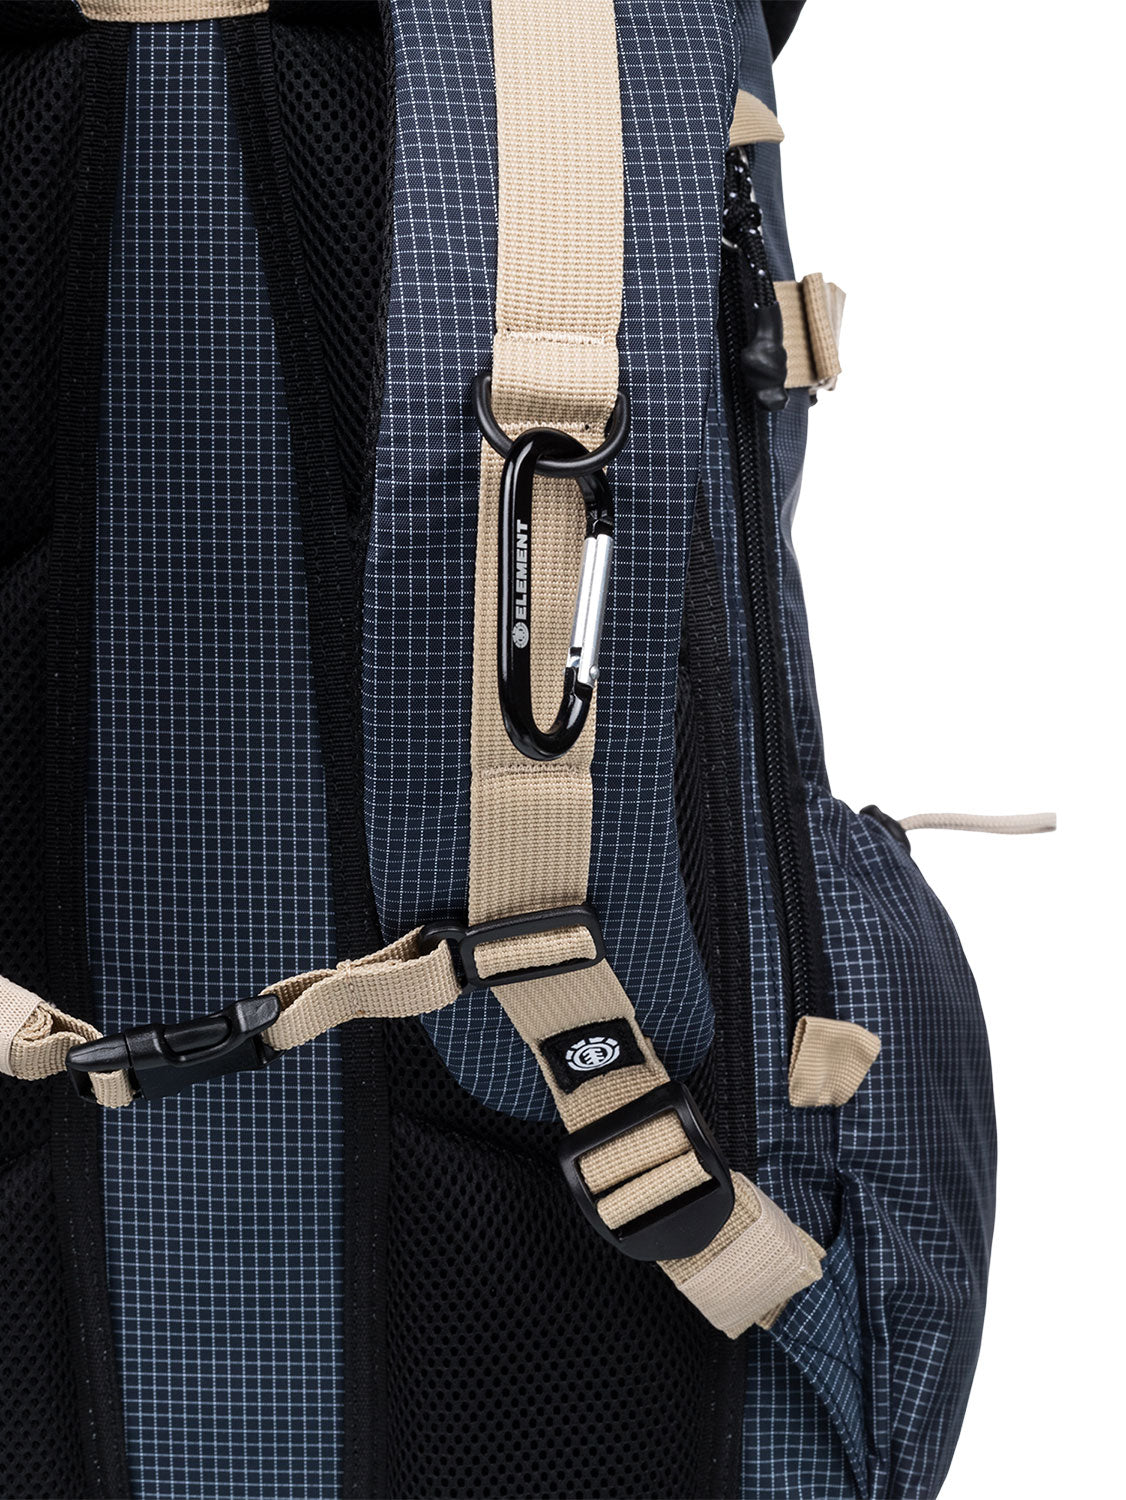 Element Men's Furrow 29L Backpack